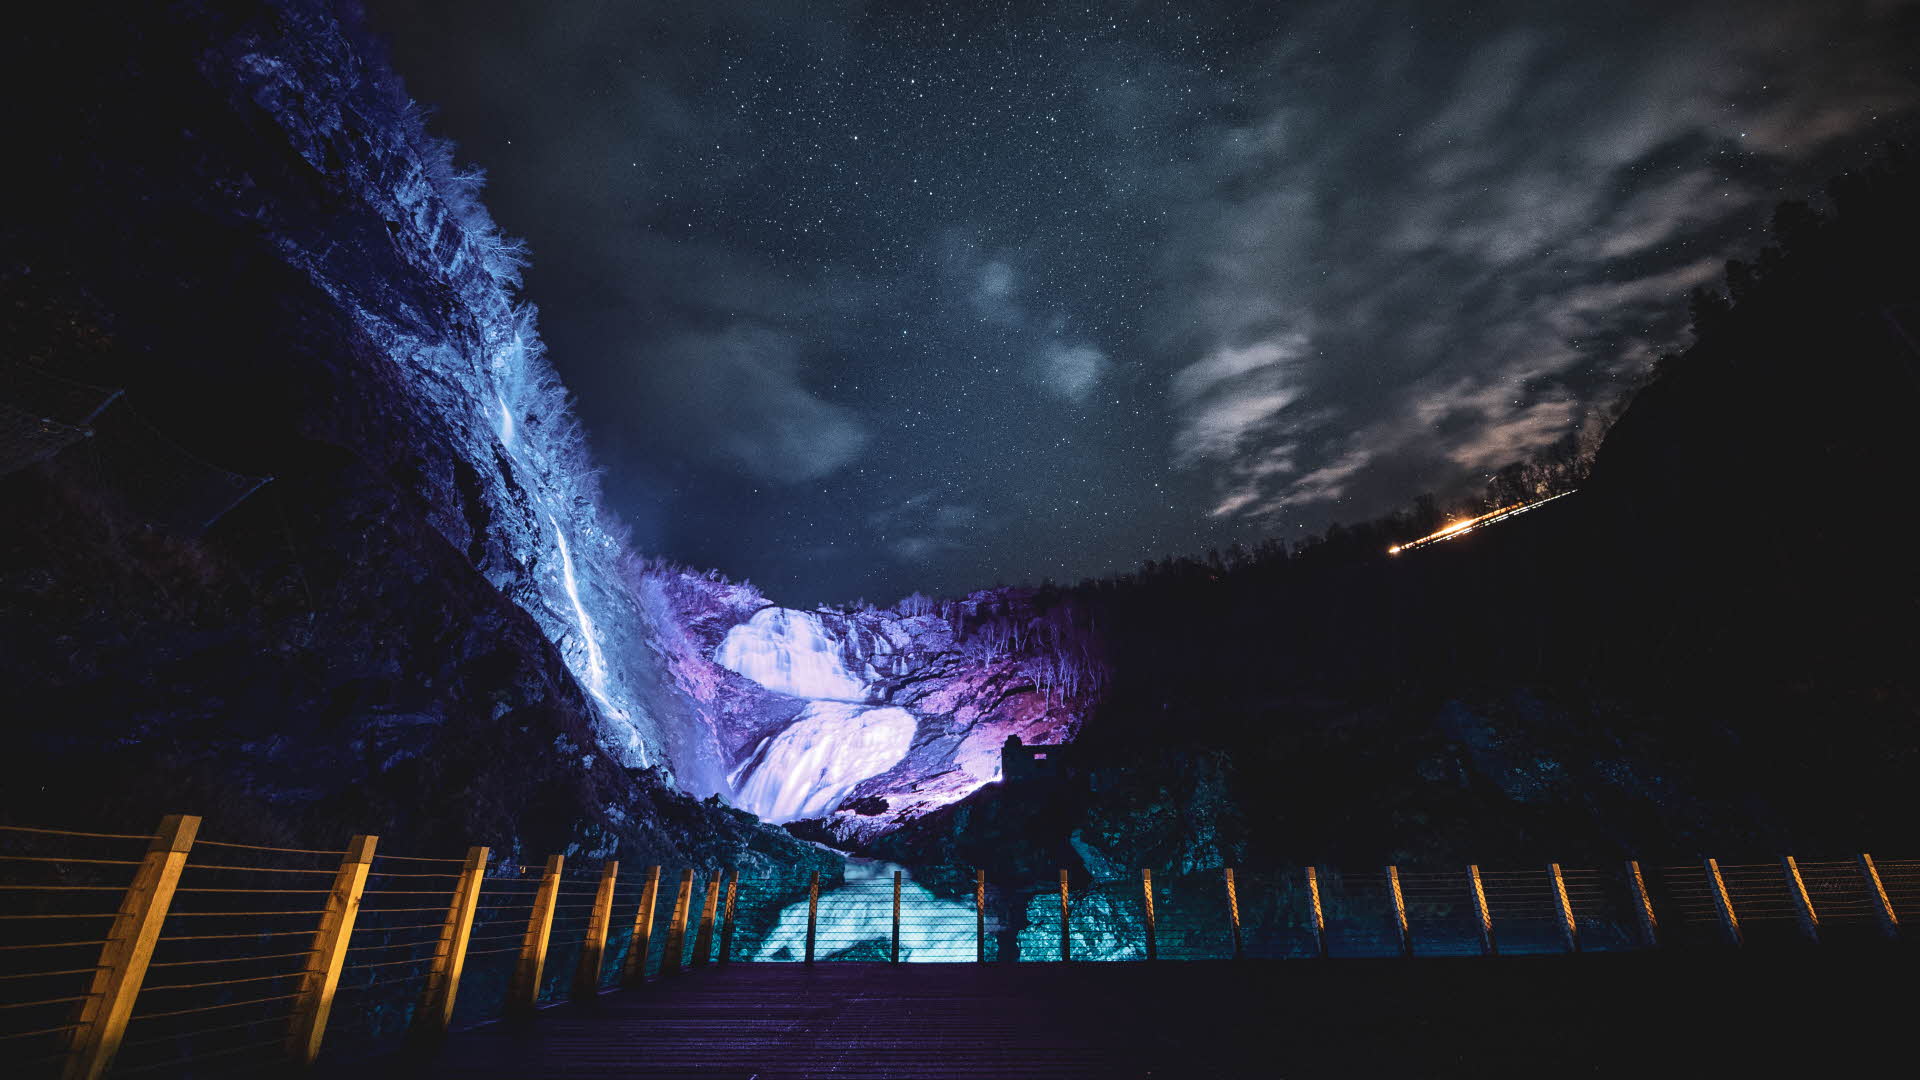 Der Wasserfall Kjosfossen mit lila Beleuchtung bei Nacht.